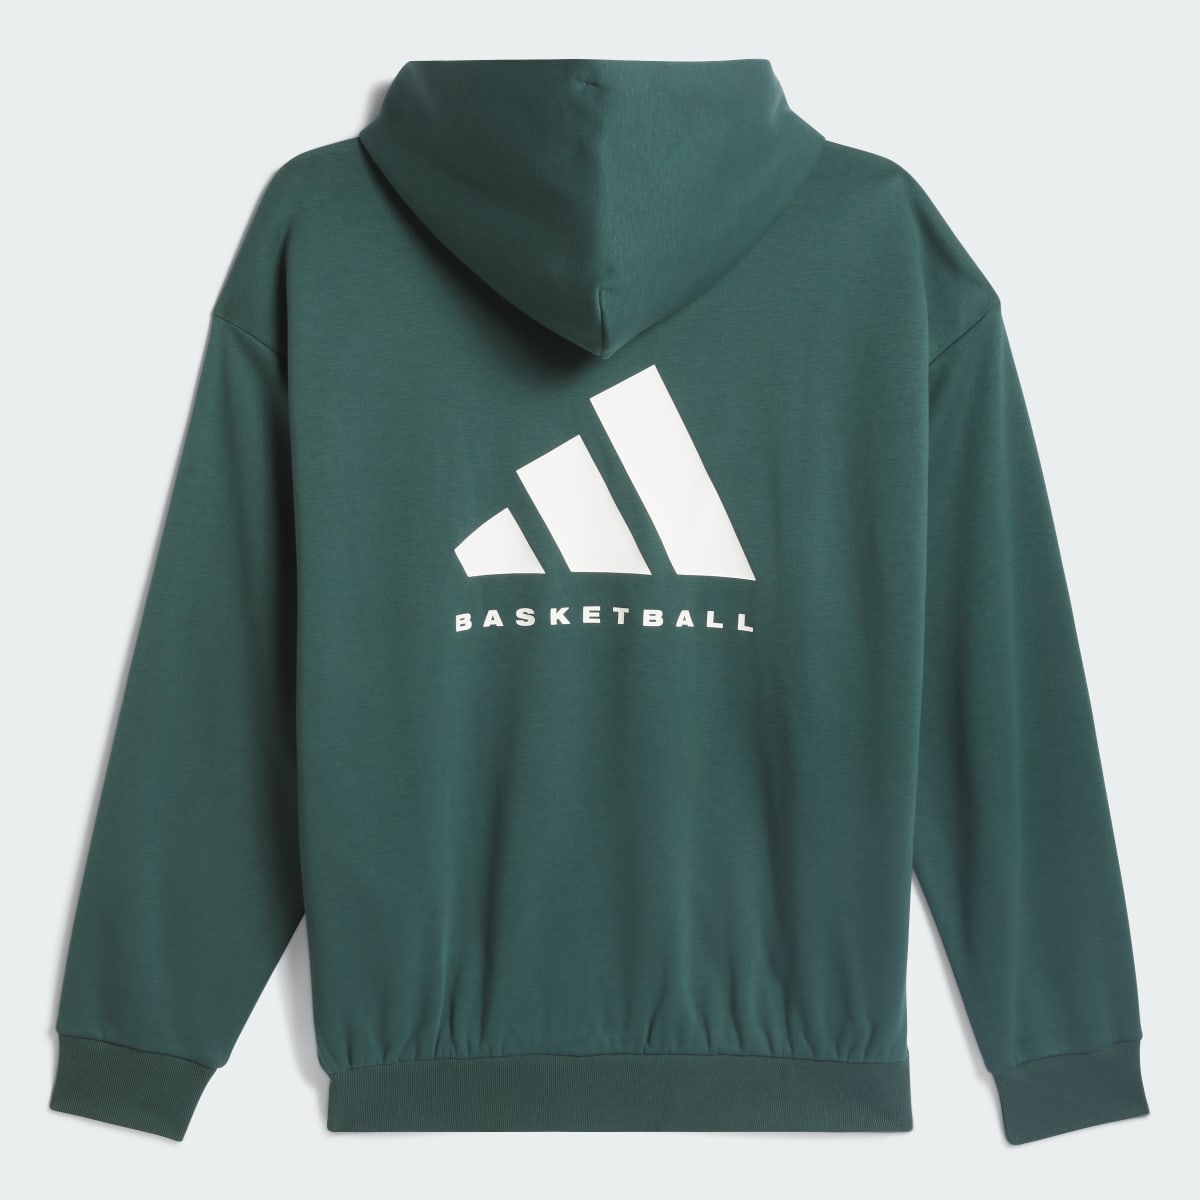 Adidas Basketball Hoodie. 5